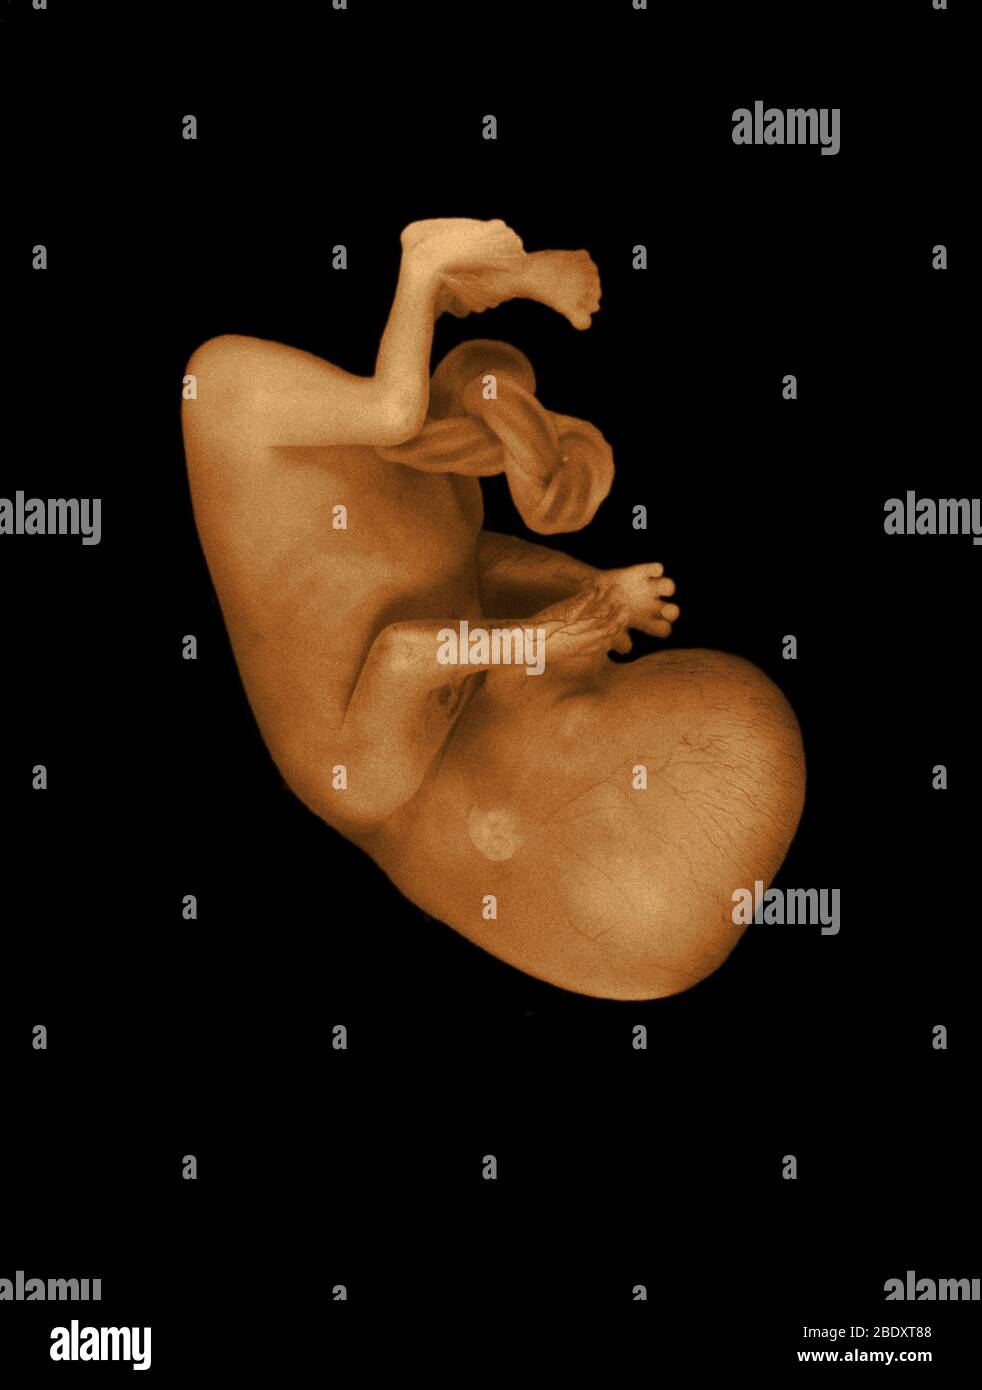 13 week old human fetus Stock Photo